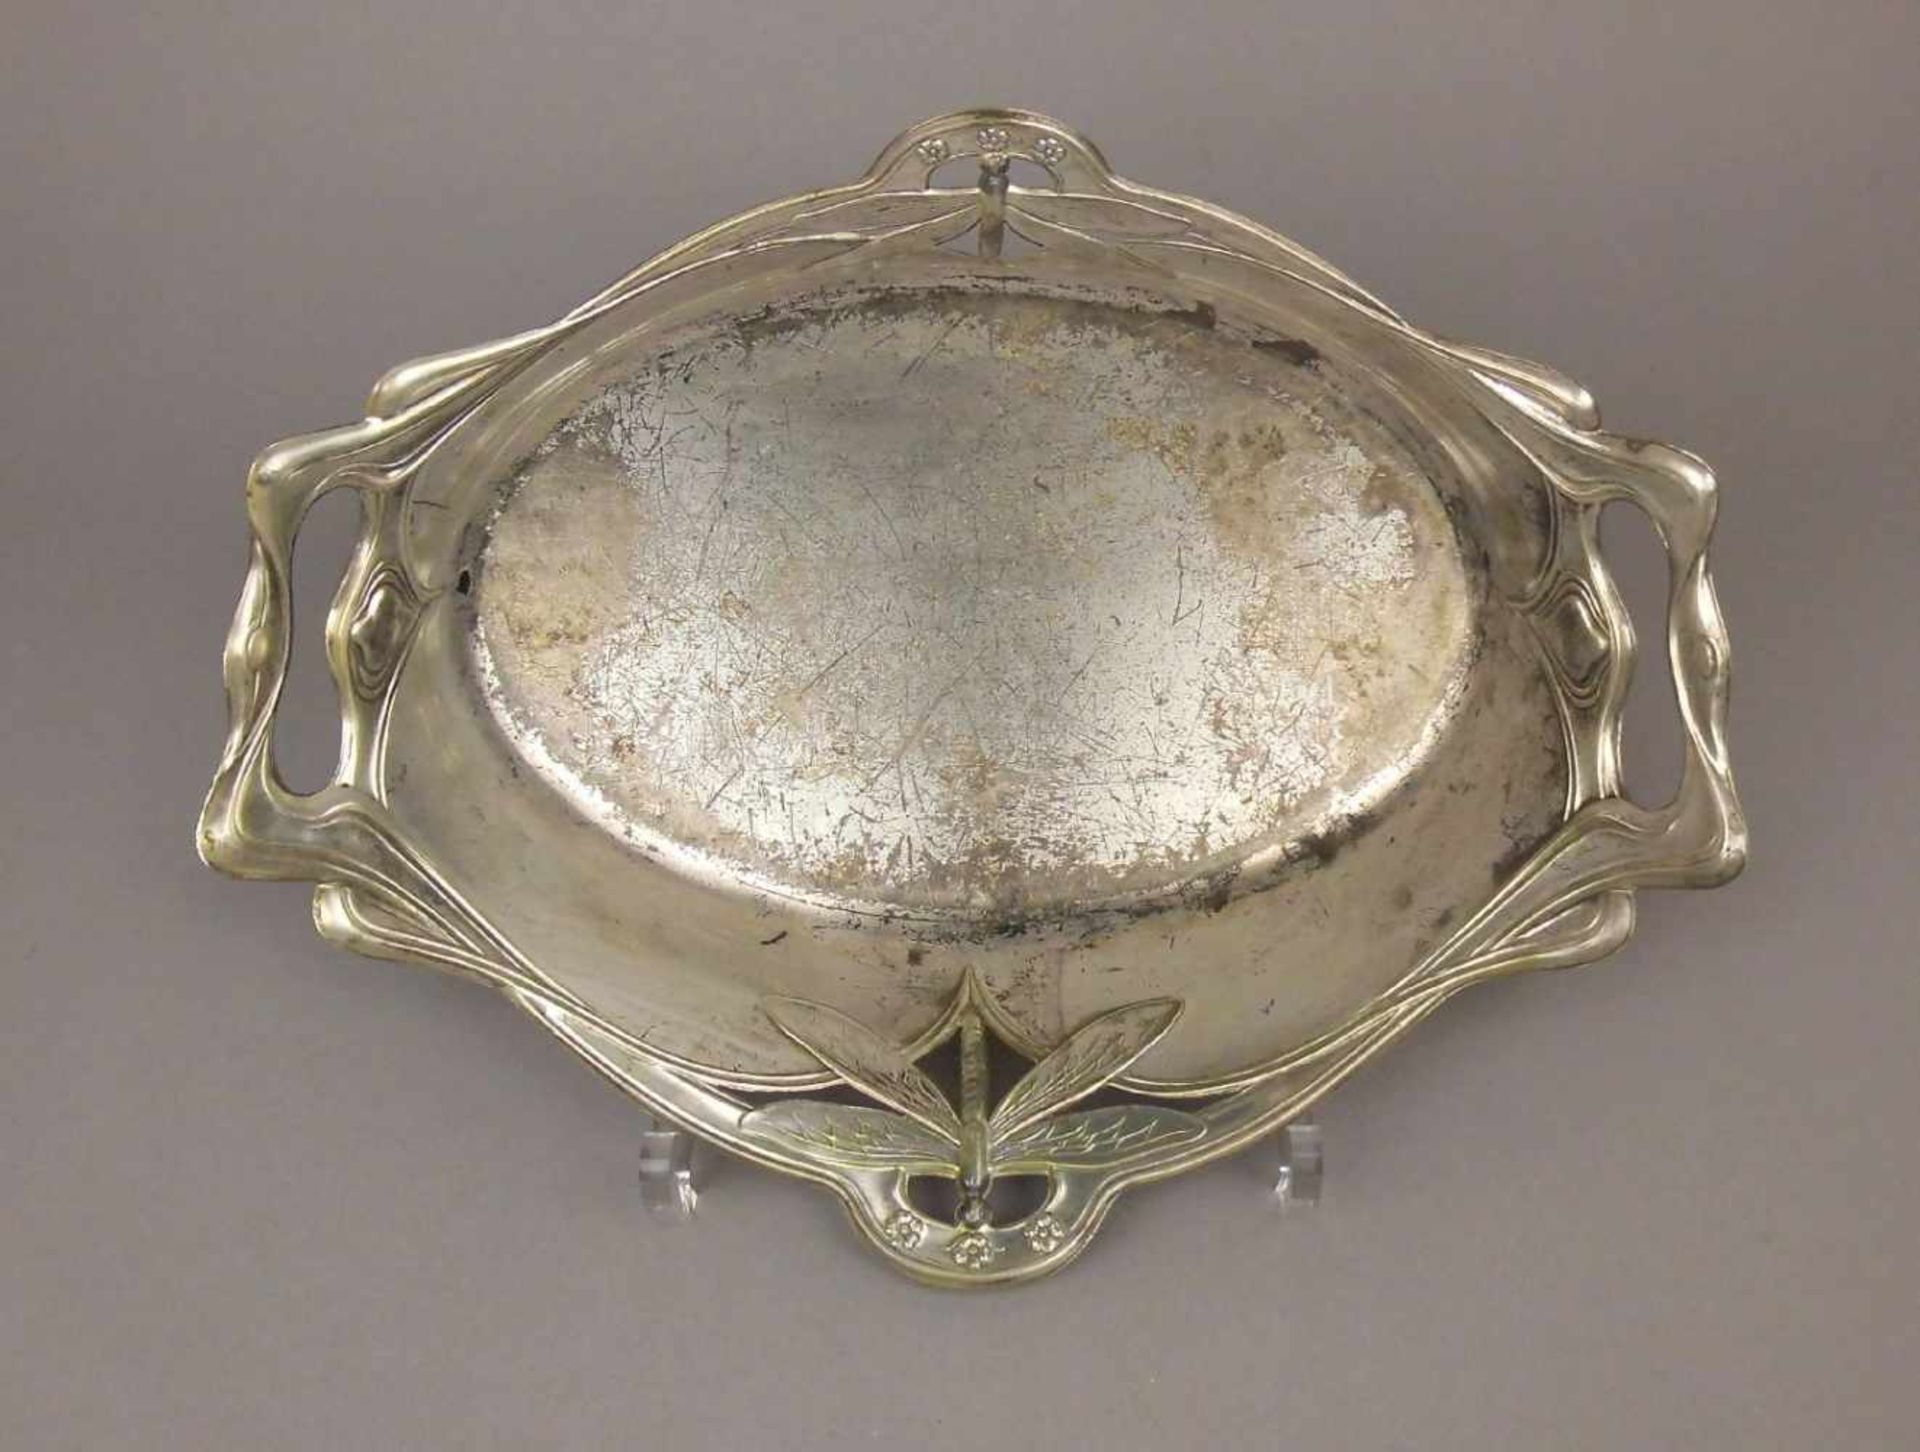 JUGENDSTILSCHALE MIT LIBELLENMOTIV, art nouveau bowl with dragonfly, versilbertes Metall ( - Image 3 of 3